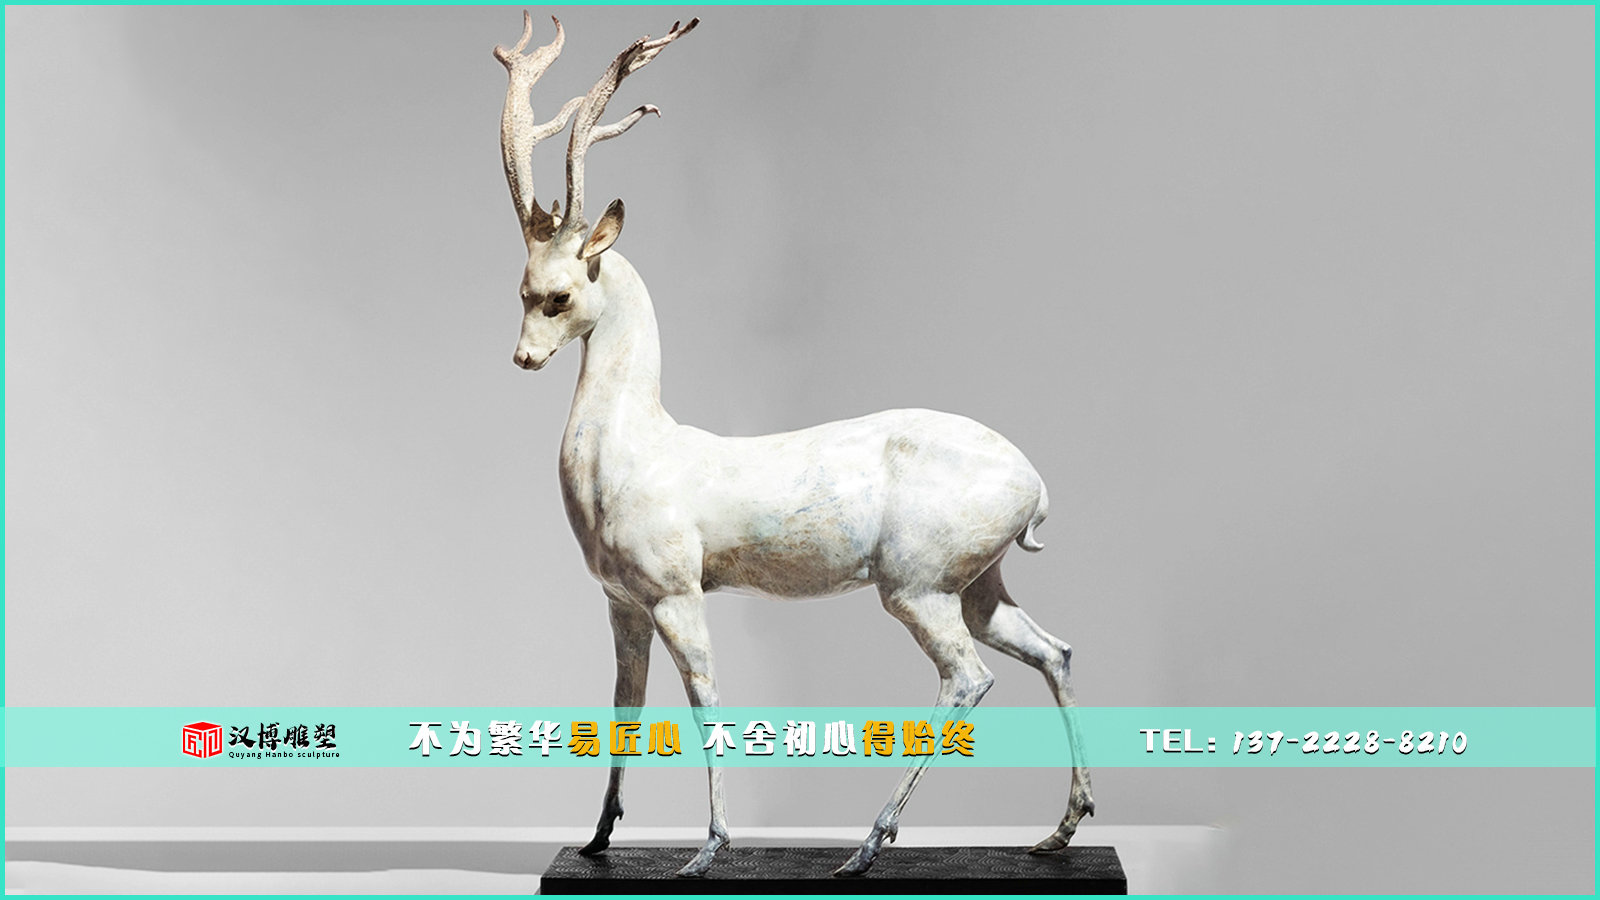 鹿主题雕塑——鹿的象征和寓意 